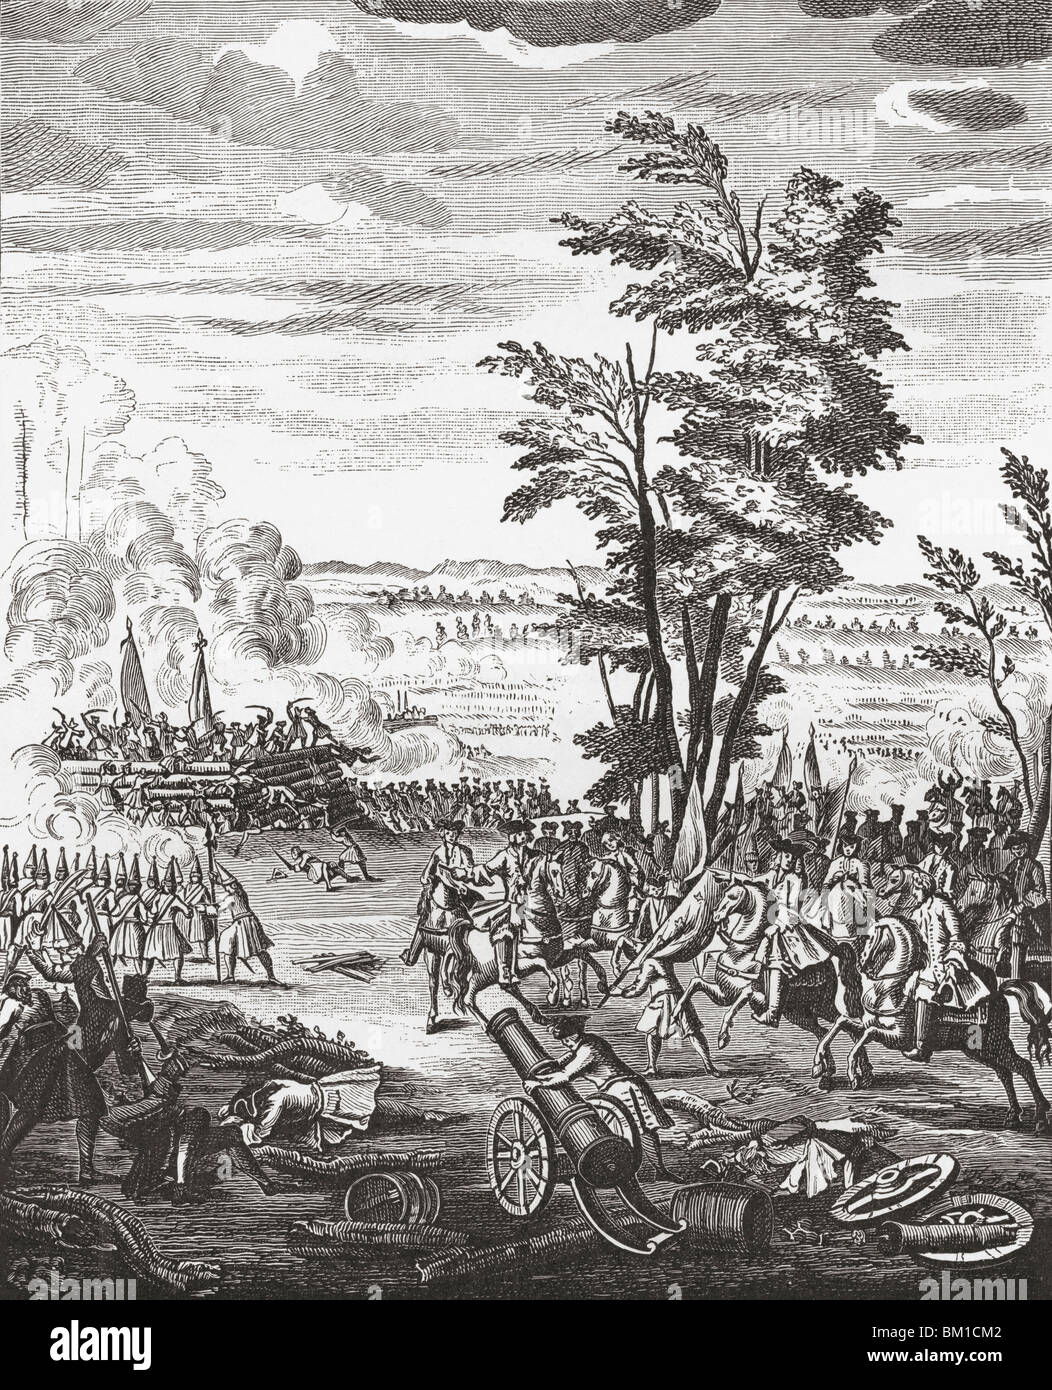 La battaglia di Malplaquet, Francia, 11 settembre 1709. Una delle principali battaglie della guerra di successione spagnola. Foto Stock